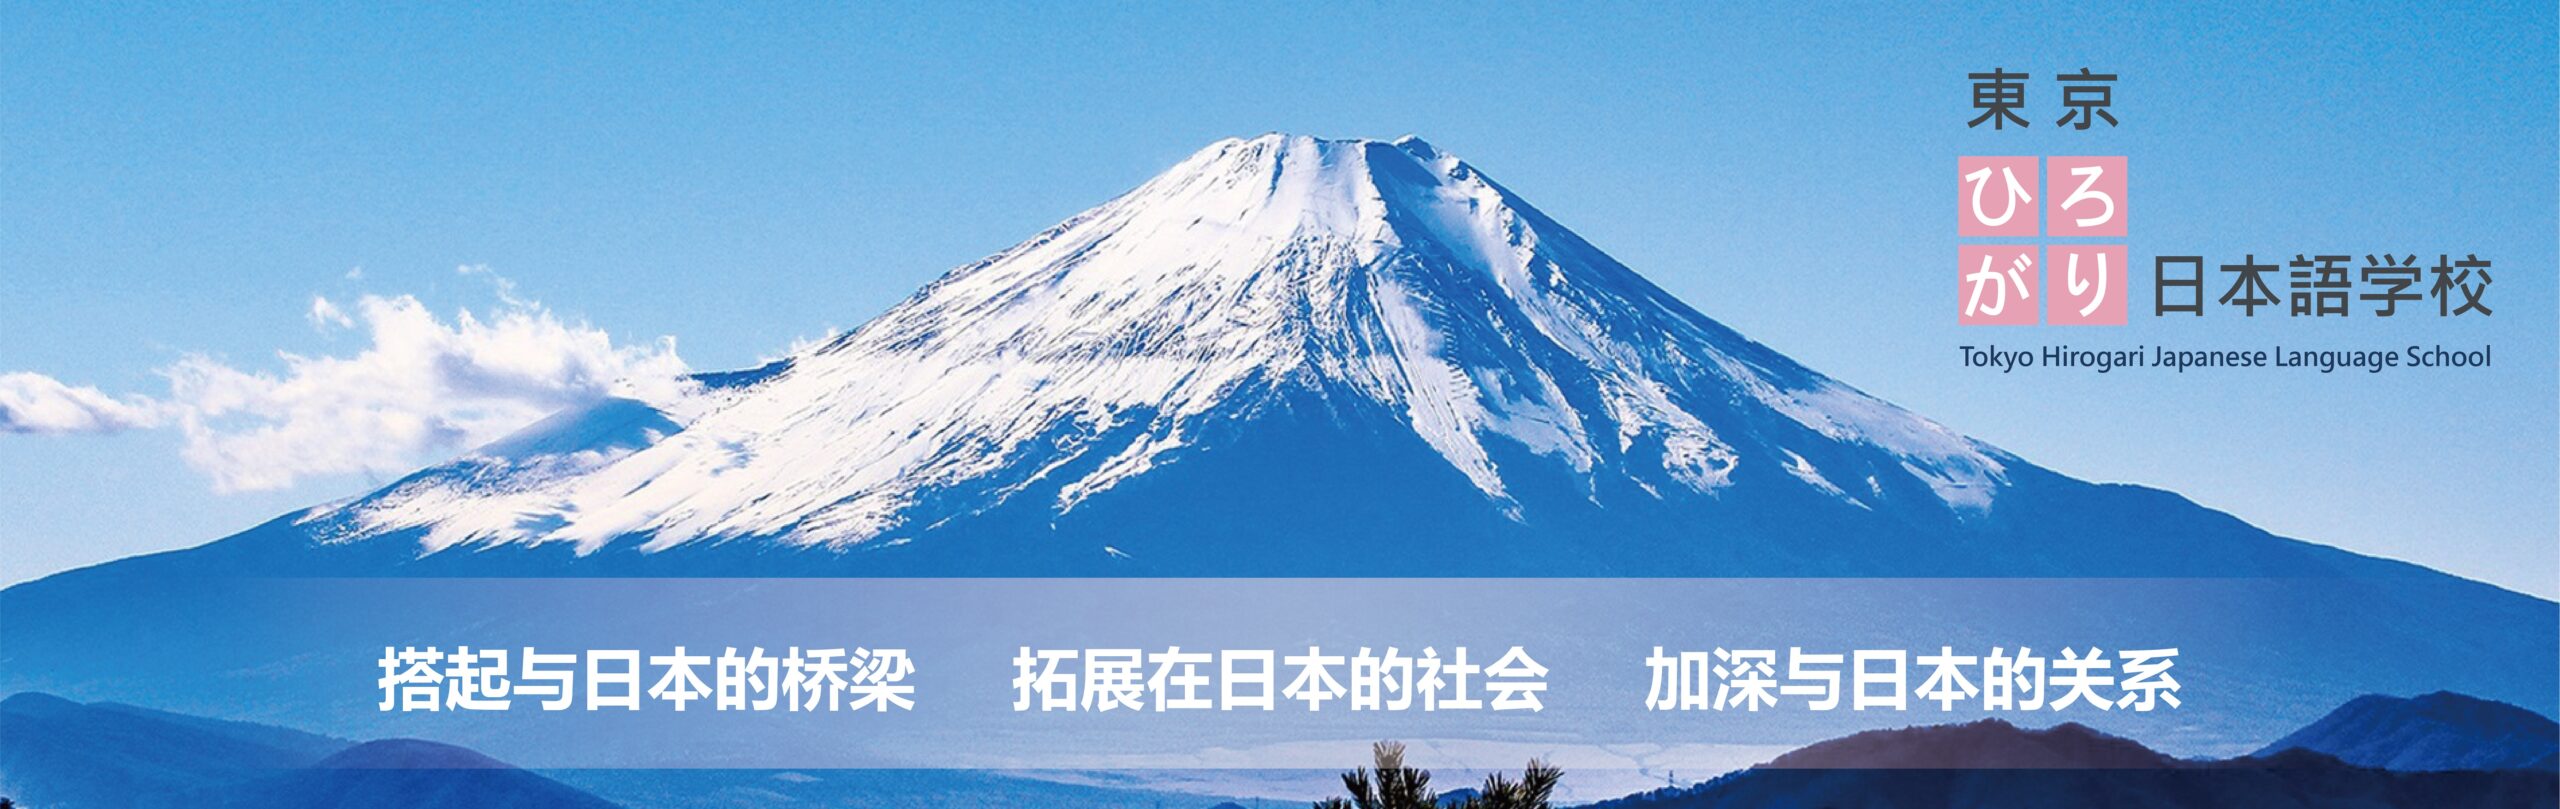 東京ひろがり日本語学校のトップページ画像